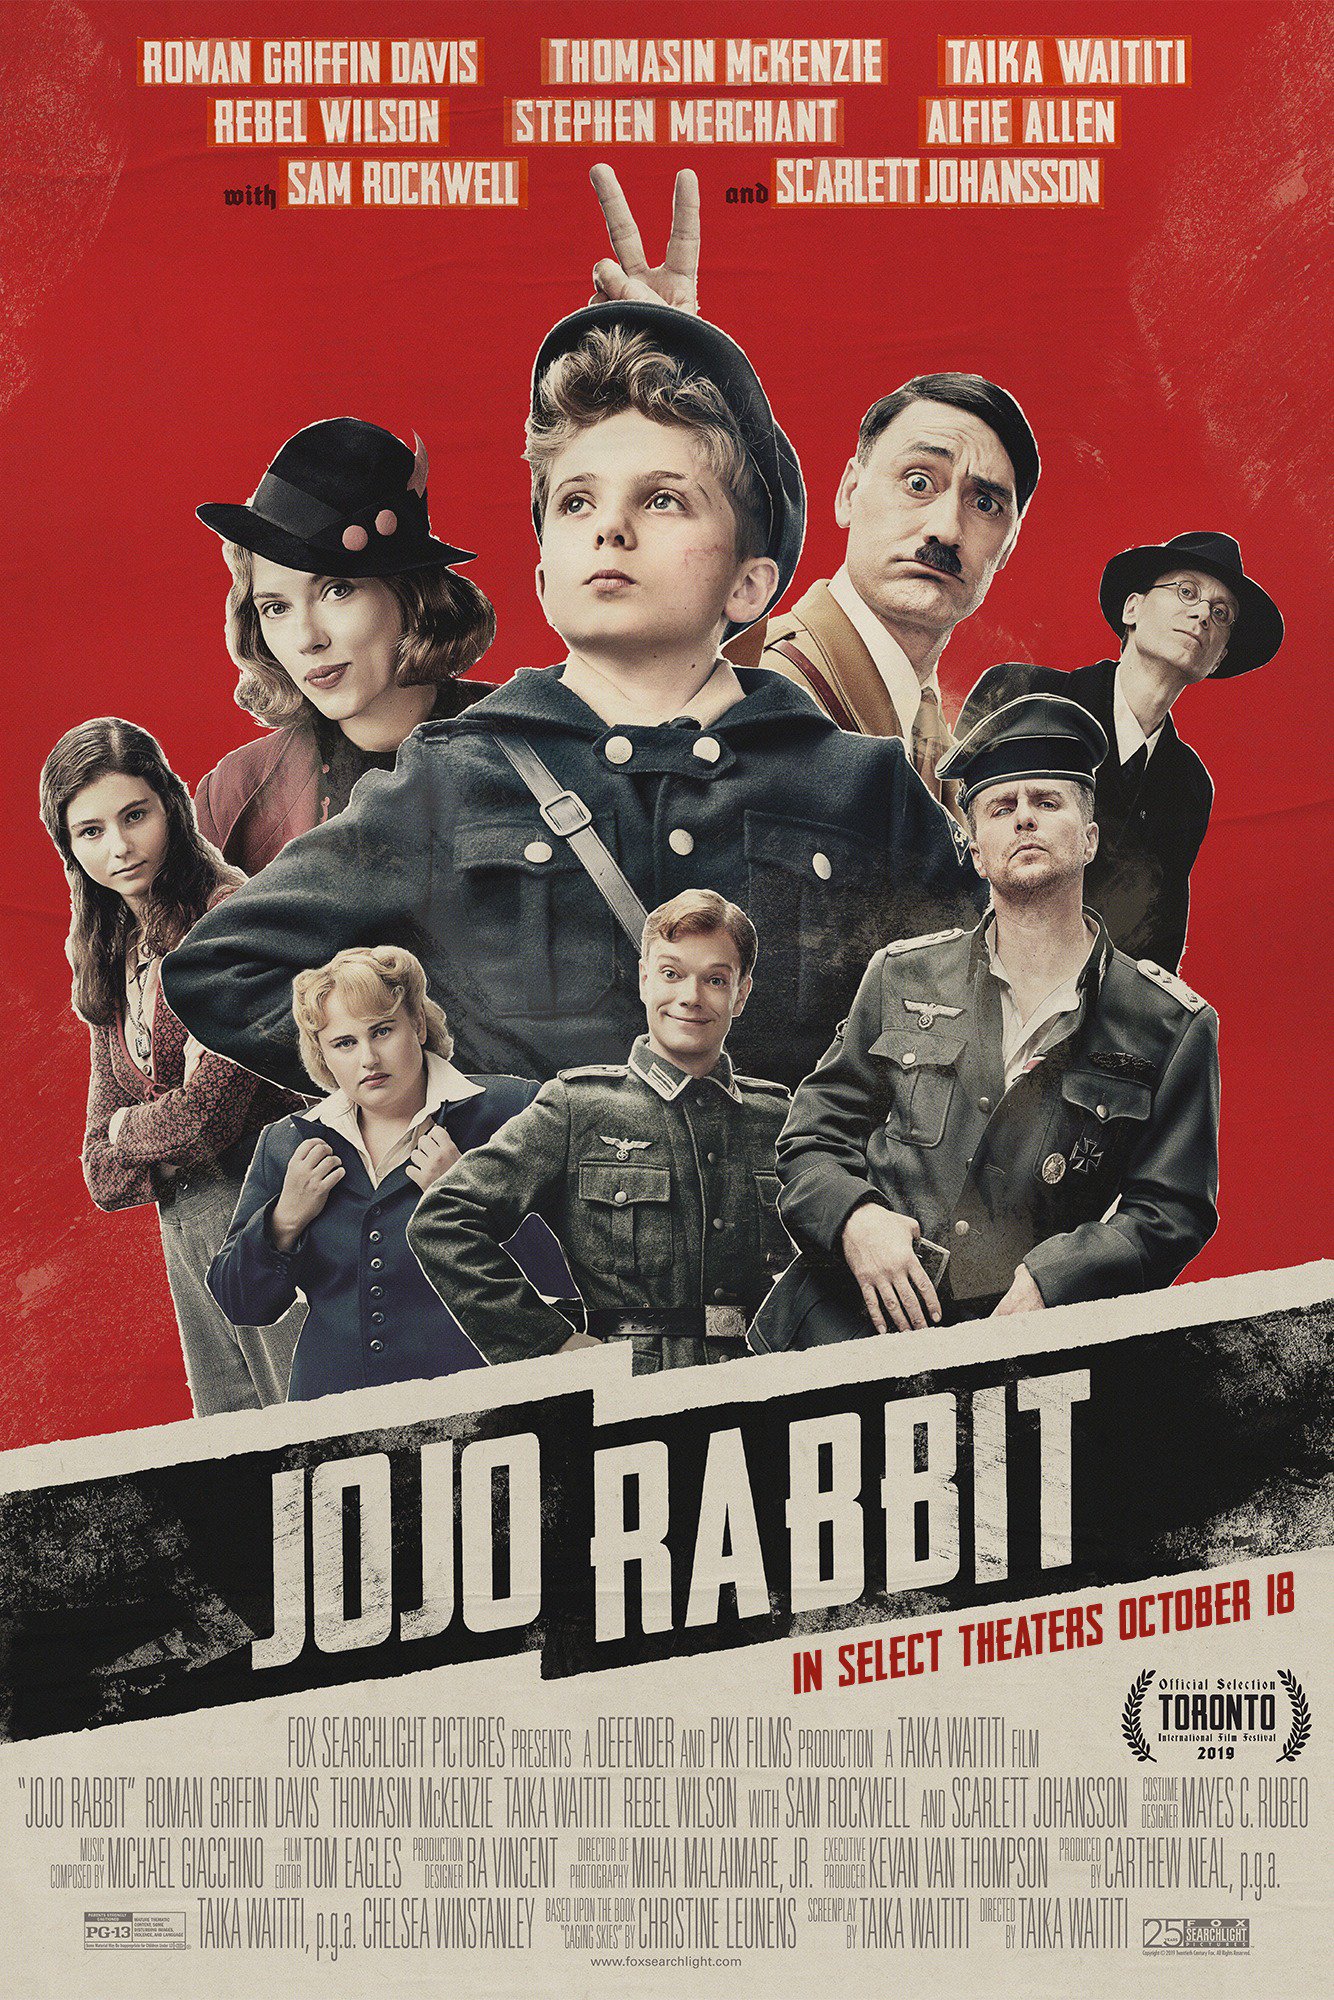 Cover Art for "Jojo Rabbit"